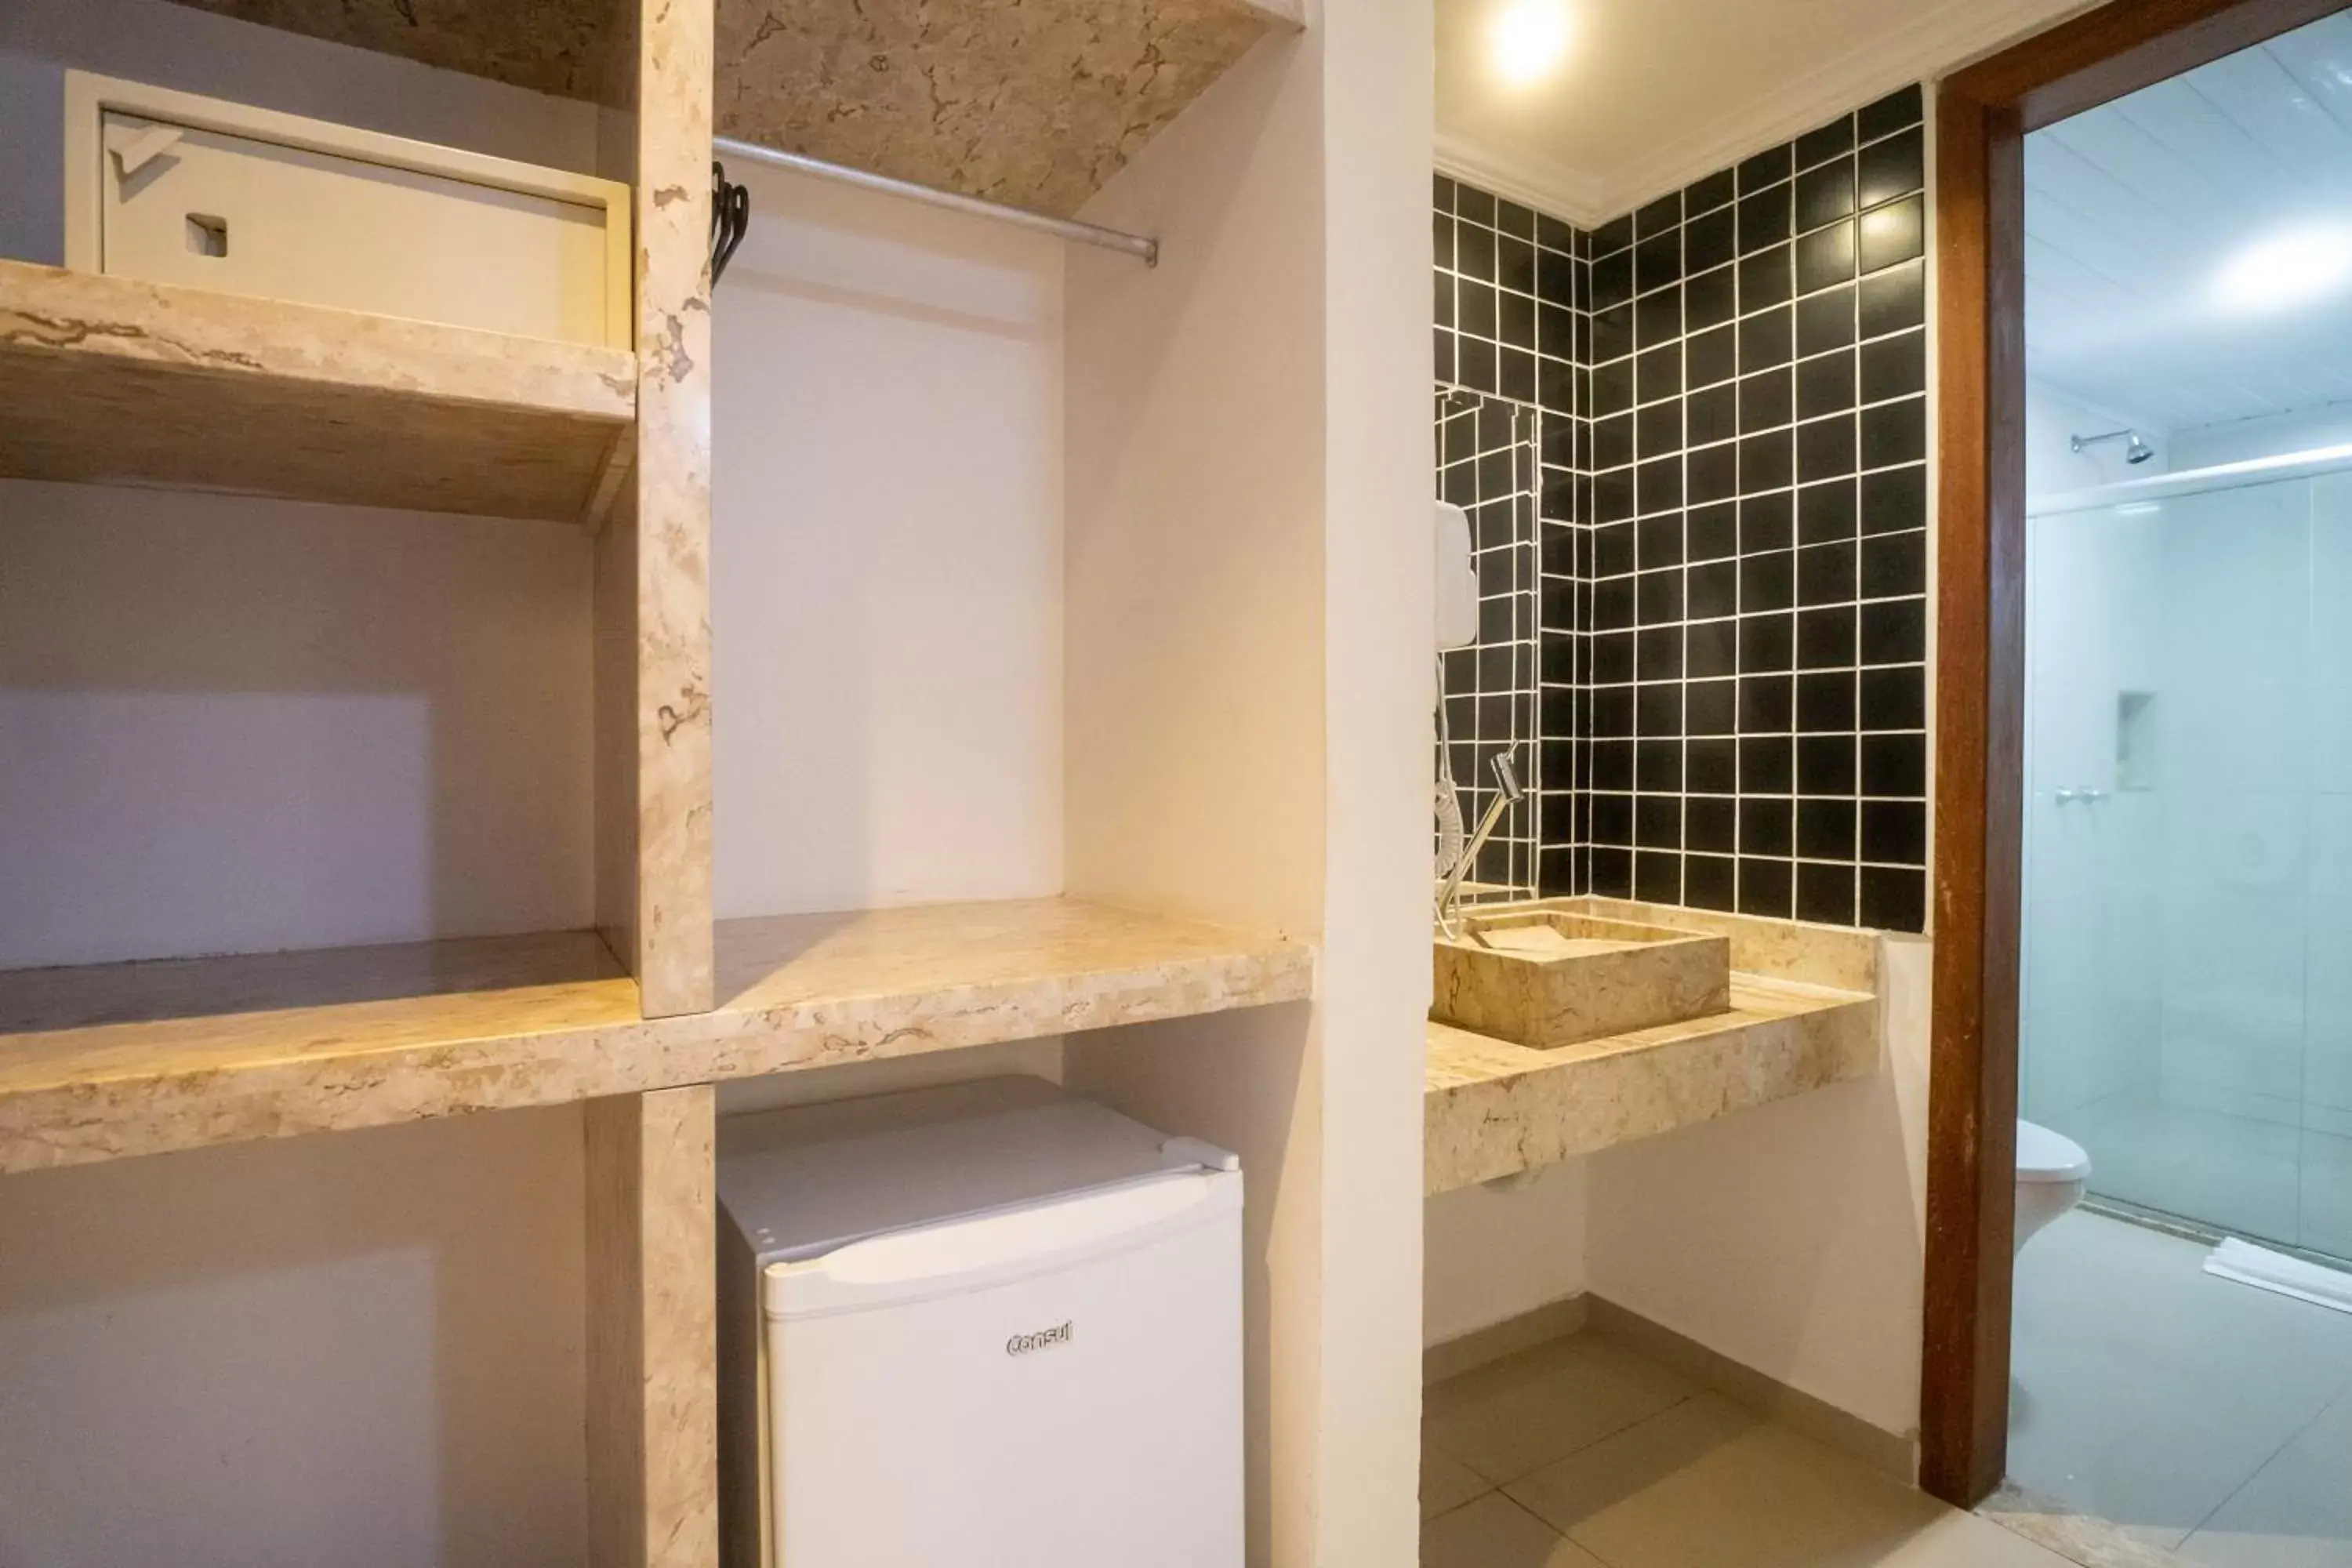 Bedroom, Bathroom in Portal Beach - Rede Soberano